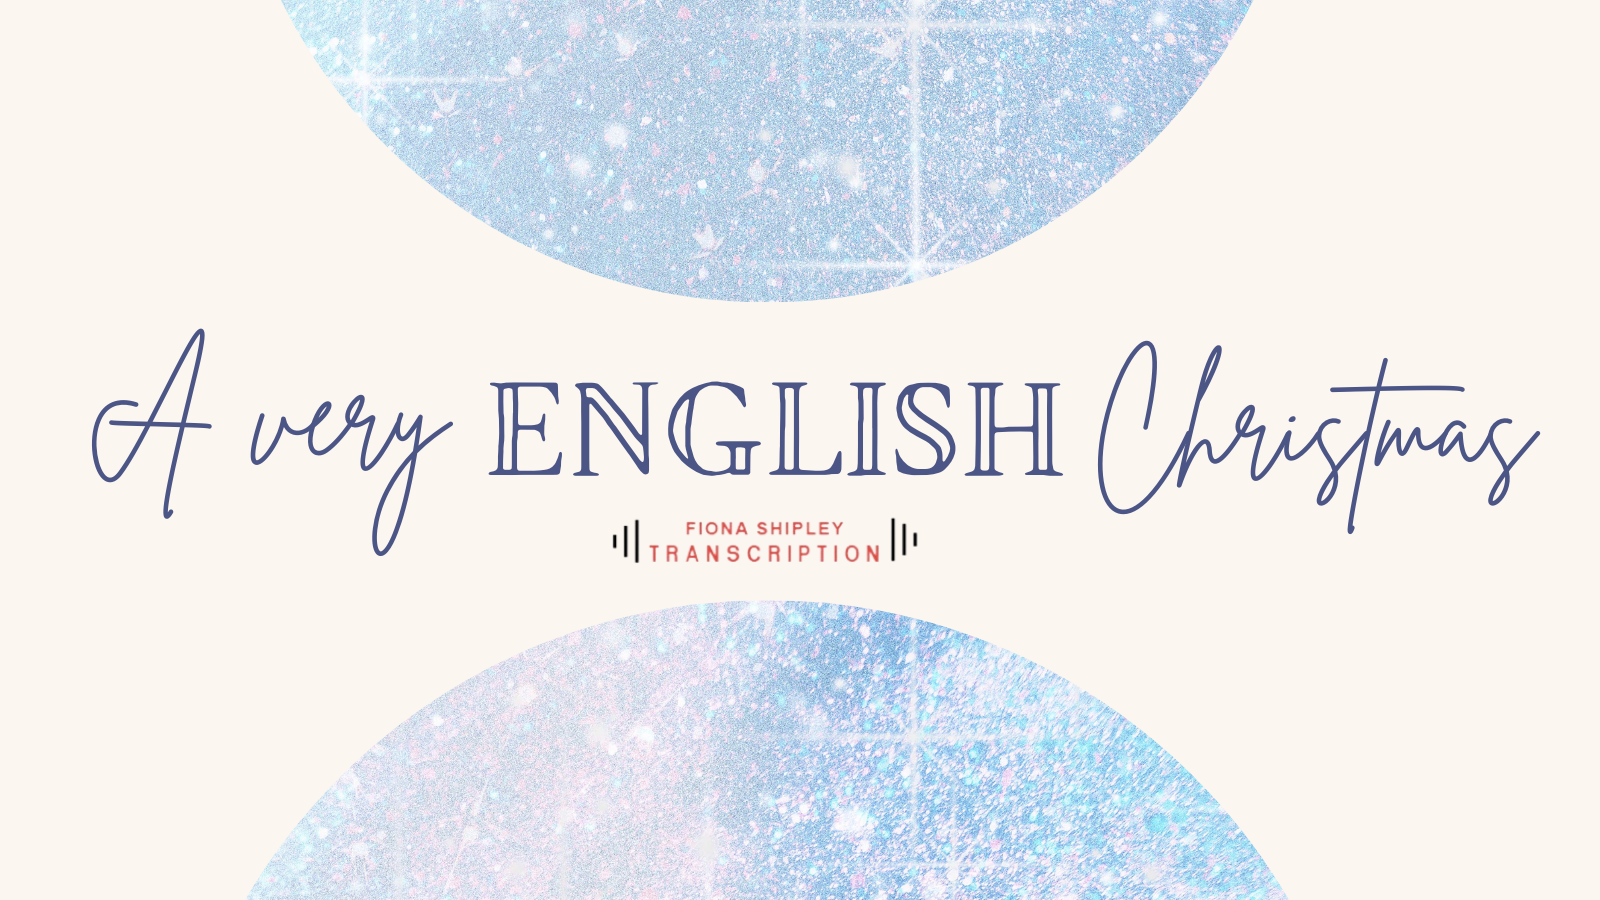 English Christmas